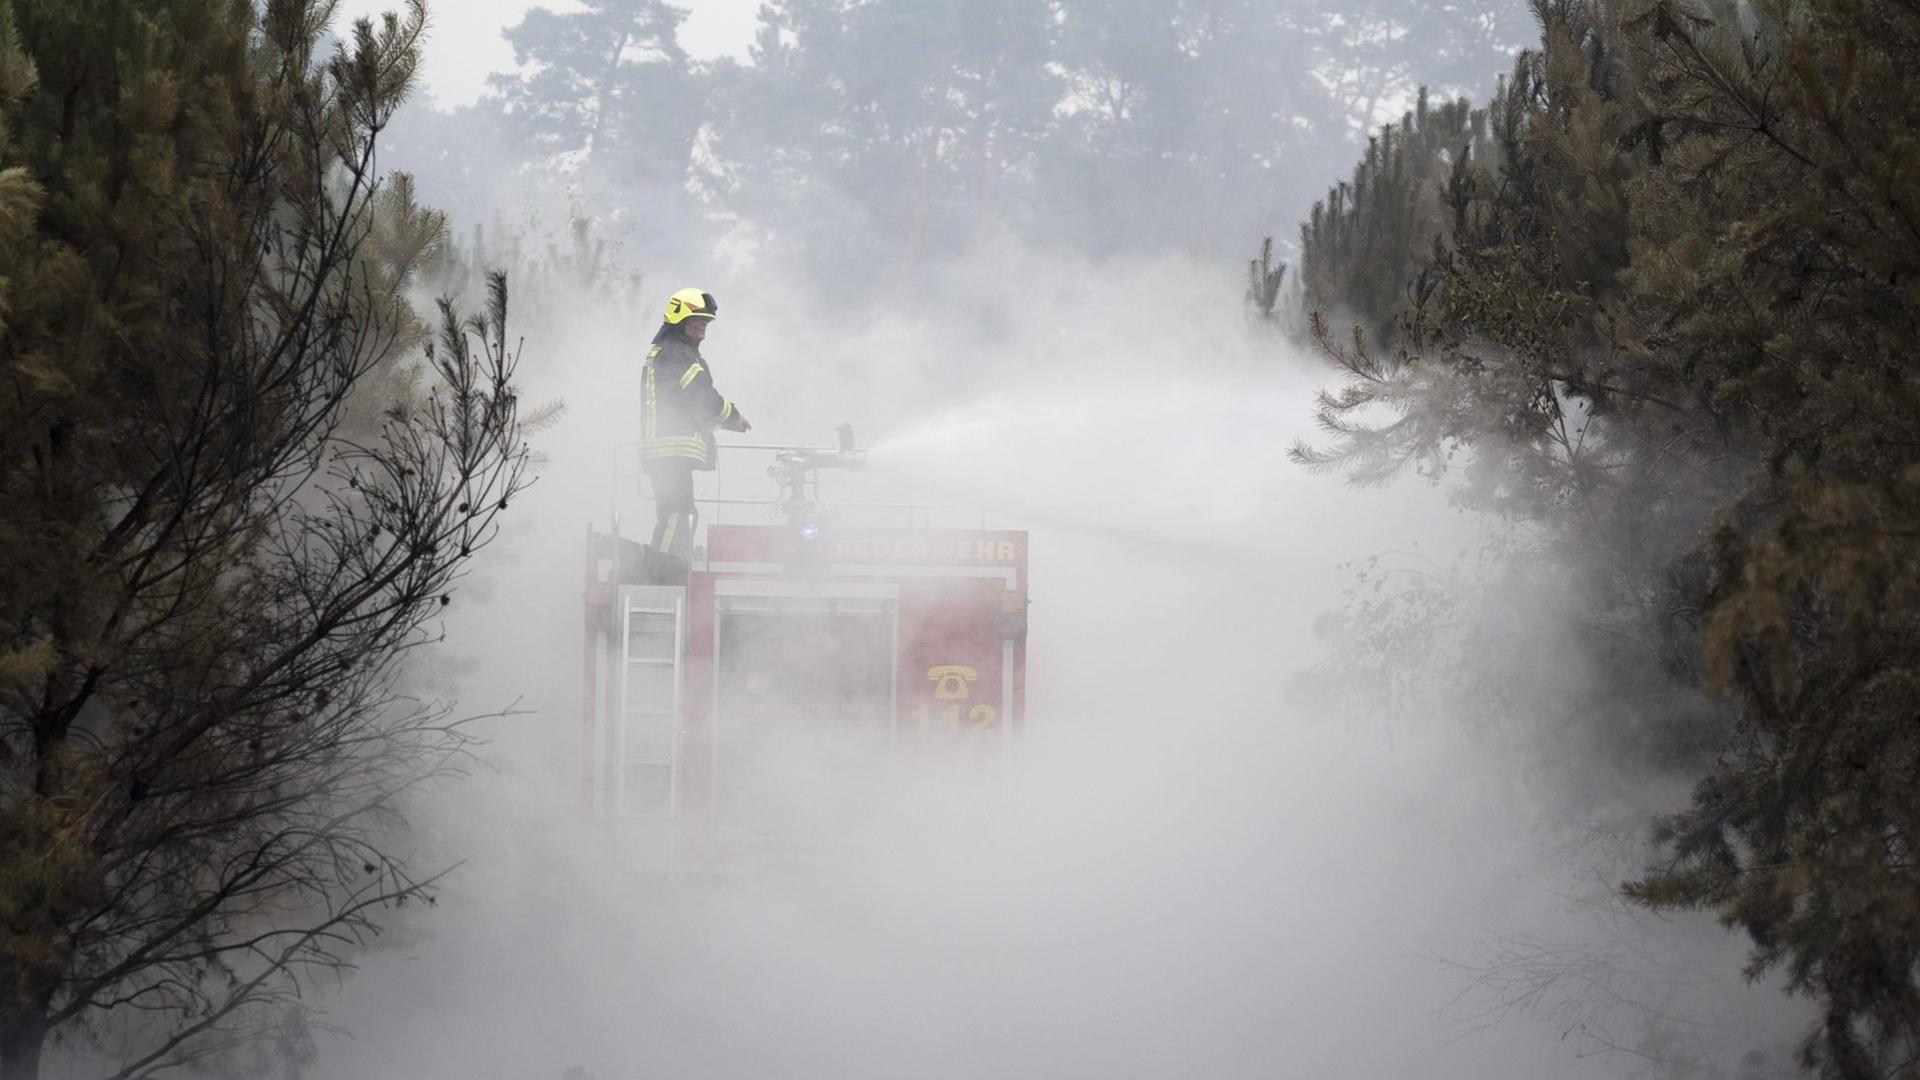 Feuerwehr bei der Bekämpfung eines Wald- und Waldbodenbrandes nahe Treuenbrietzen in den Brandenburger Landkeisen Teltow-Fläming und Potsdam-Mittelmark.